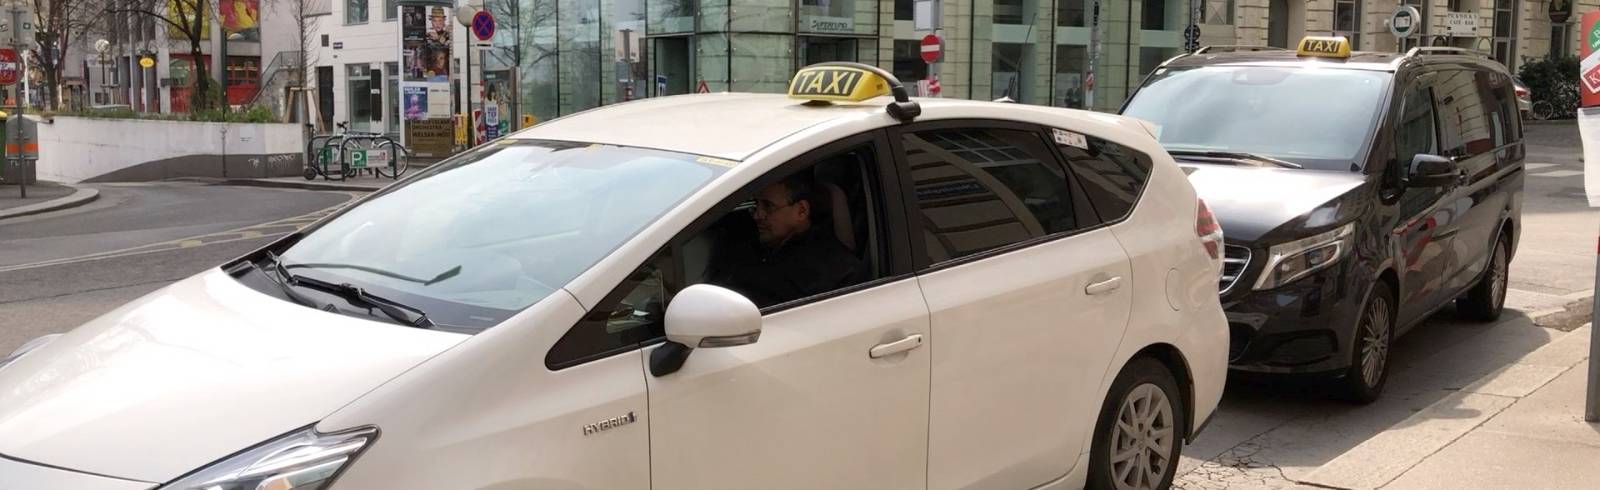 Uber: In Wien fehlen einige Tausend Taxifahrer